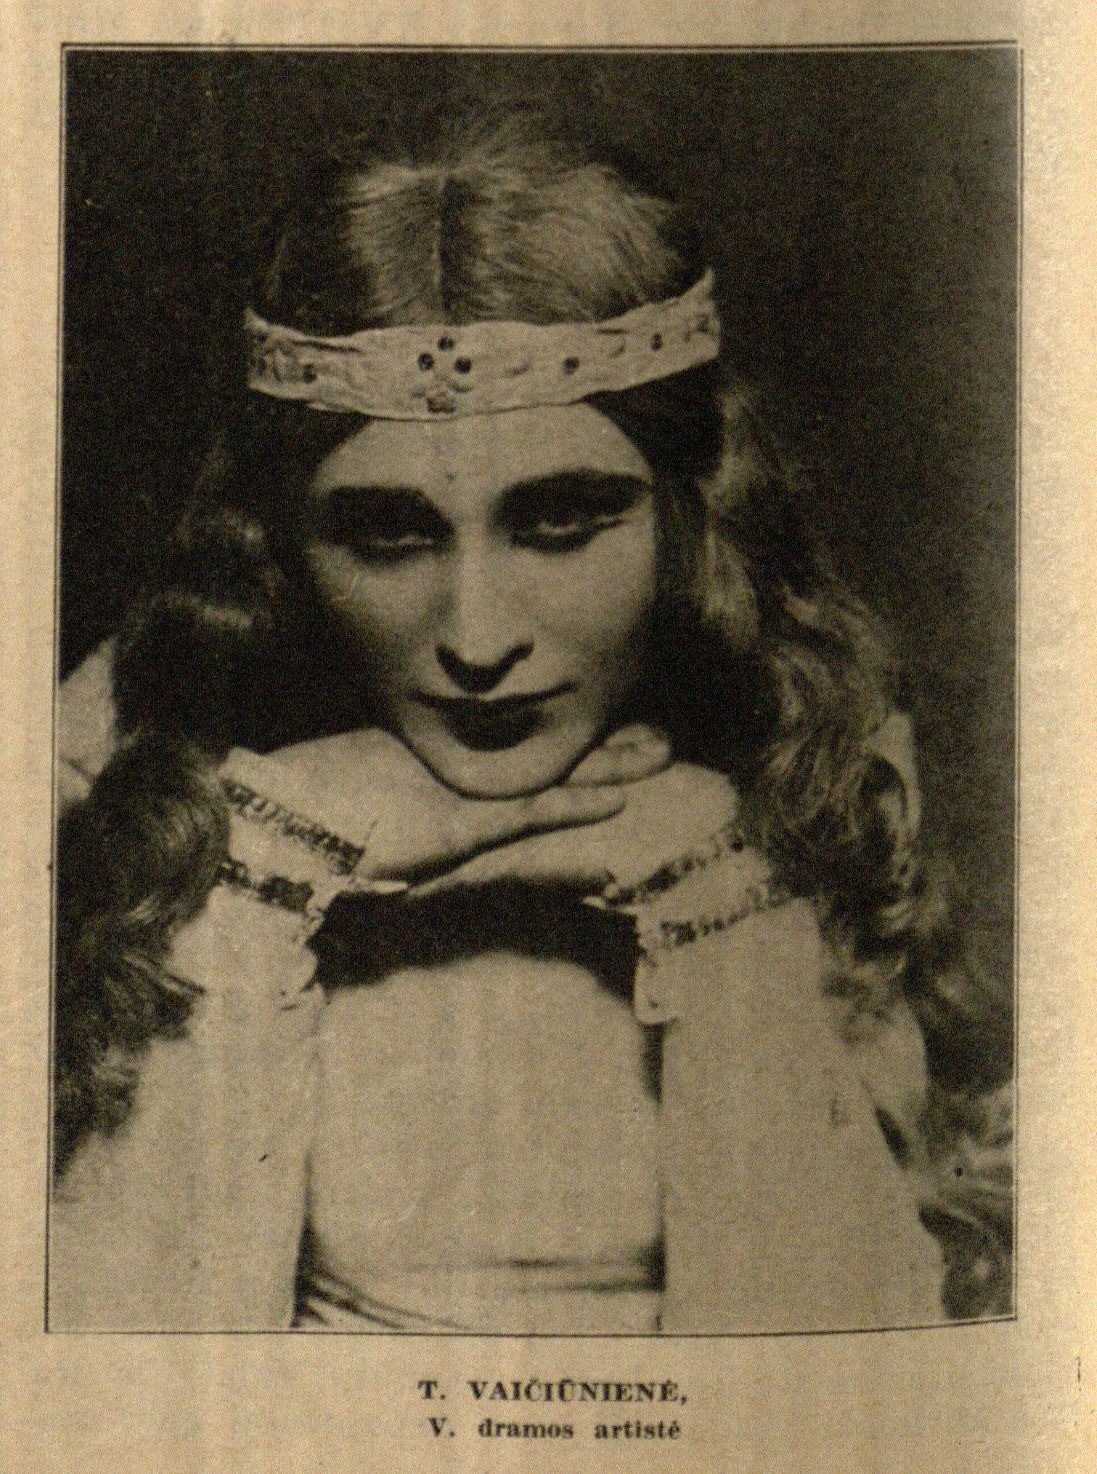 T. Vaičiūnienė, V. dramos artistė: [nuotr. prie S. Aukštaičio straipsnio „Moteris lietuvių dramos teatre“] // Naujoji Romuva. – 1936, Nr. 39, p. 740.